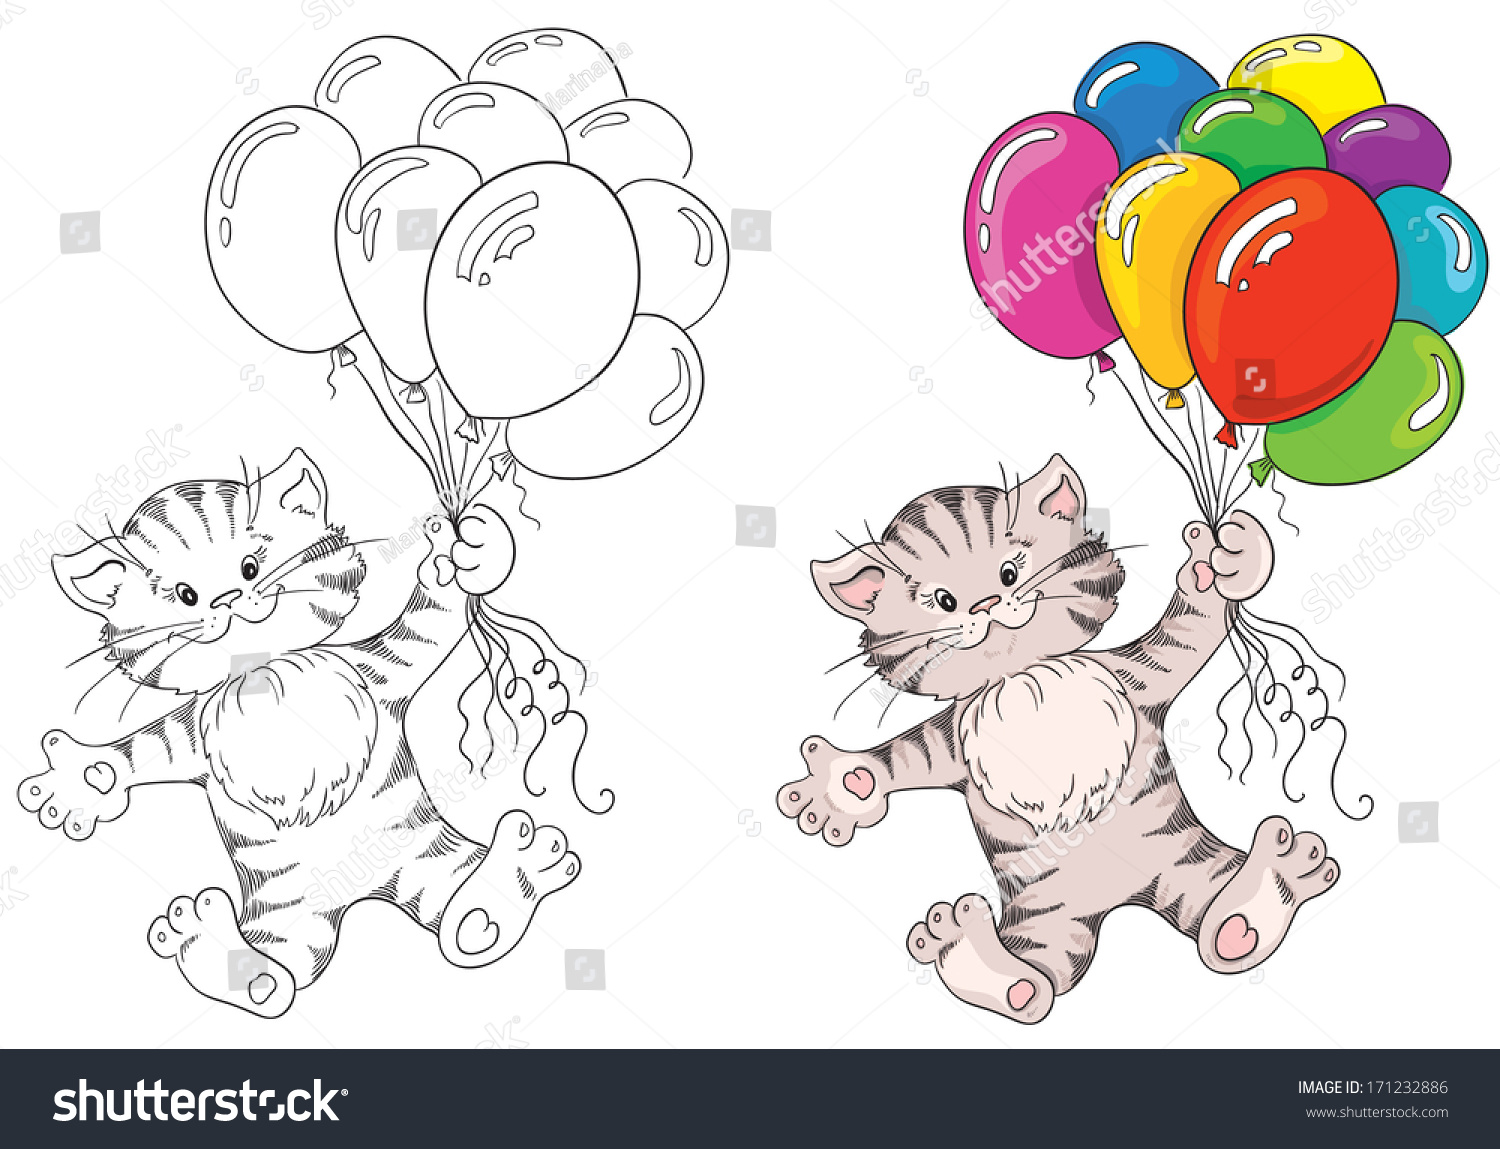 Кошка с шариками рисование средняя группа. Рисование кошка с воздушными шариками. Котенок с шариками раскраска. Кошка с воздушными шарами средняя группа рисование. Котенок с шарами раскраска.